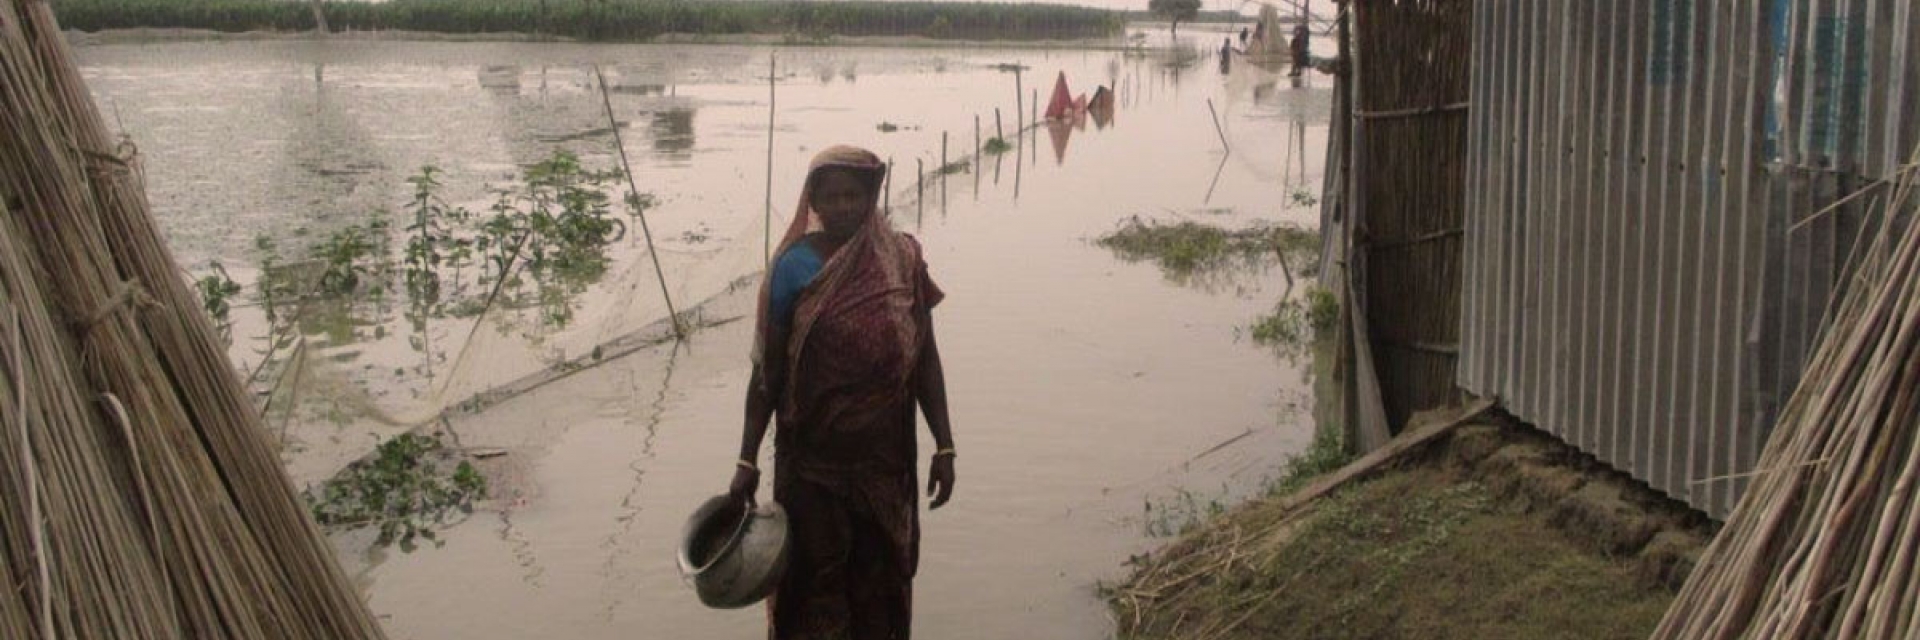 Bangladesh floods 2014